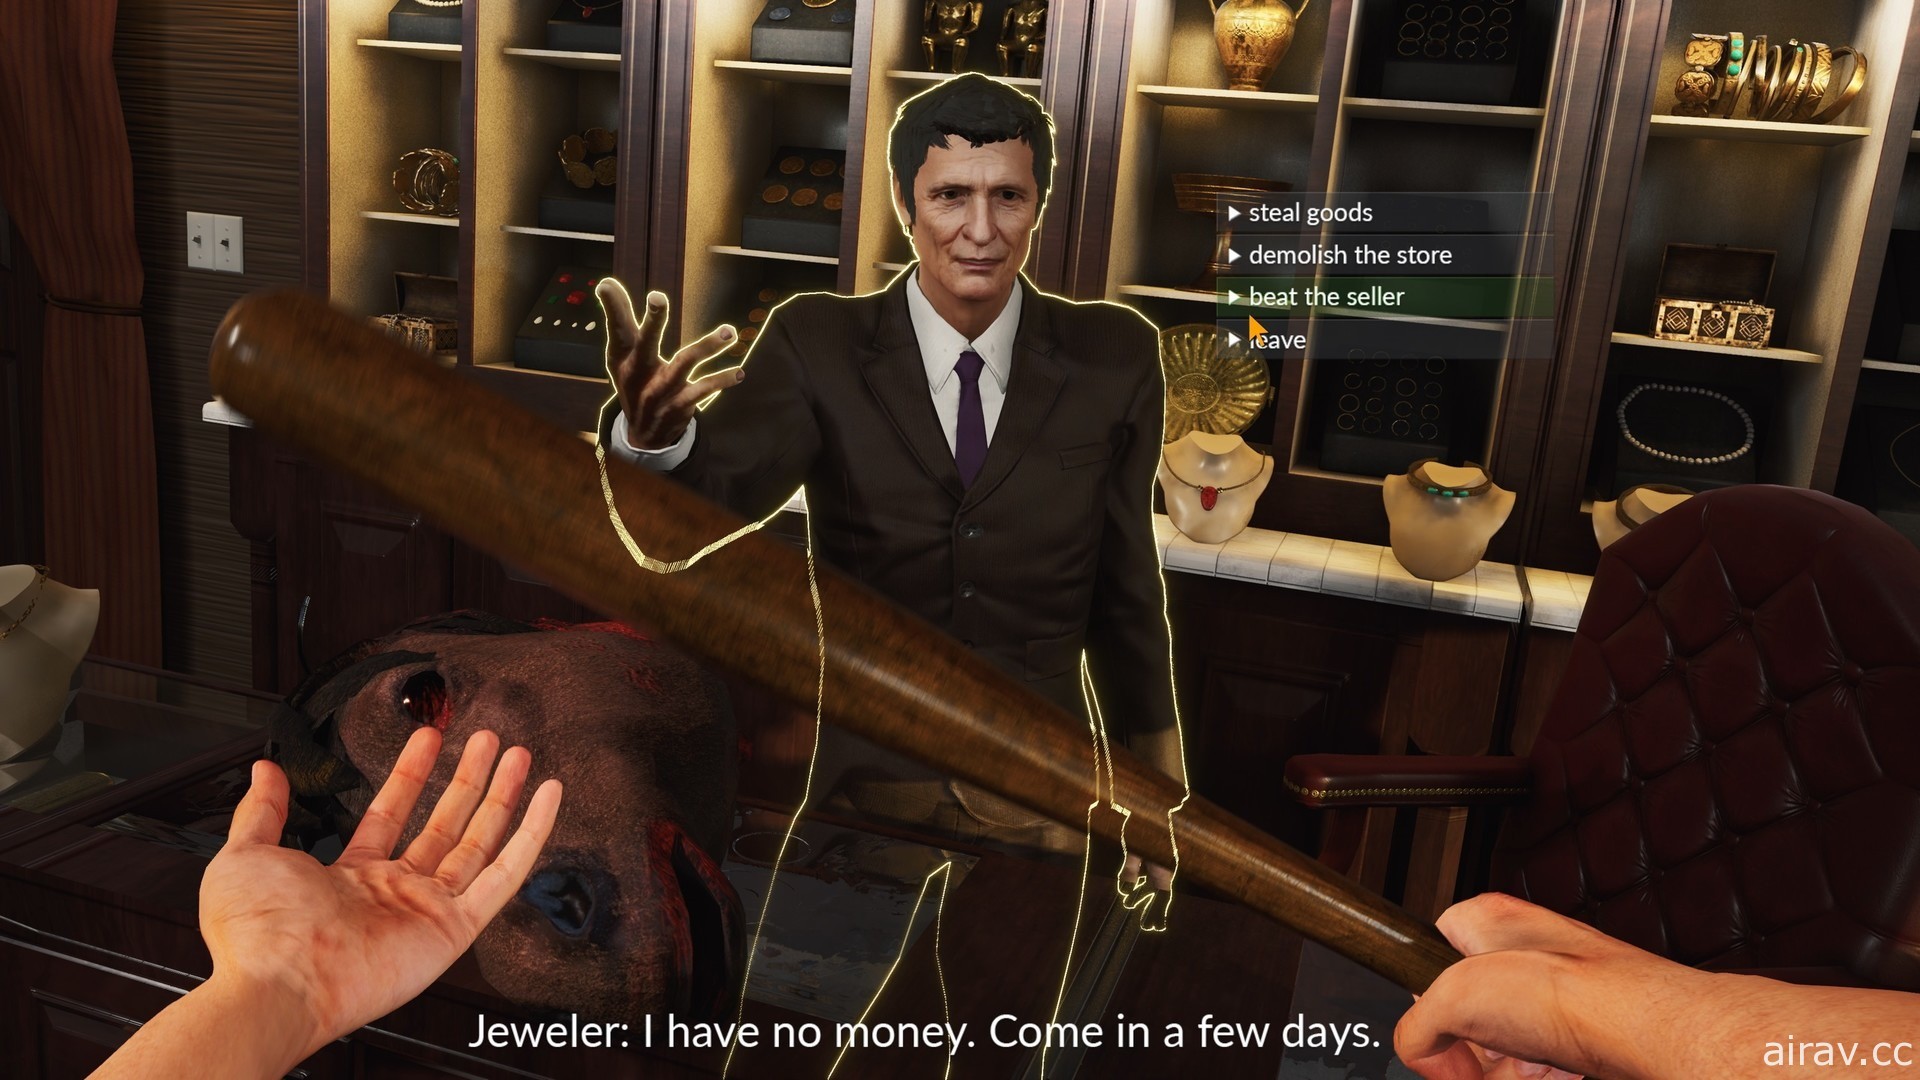 《模擬歹徒 Gangster Simulator》公開首部遊戲影片 想辦法闖出一片天